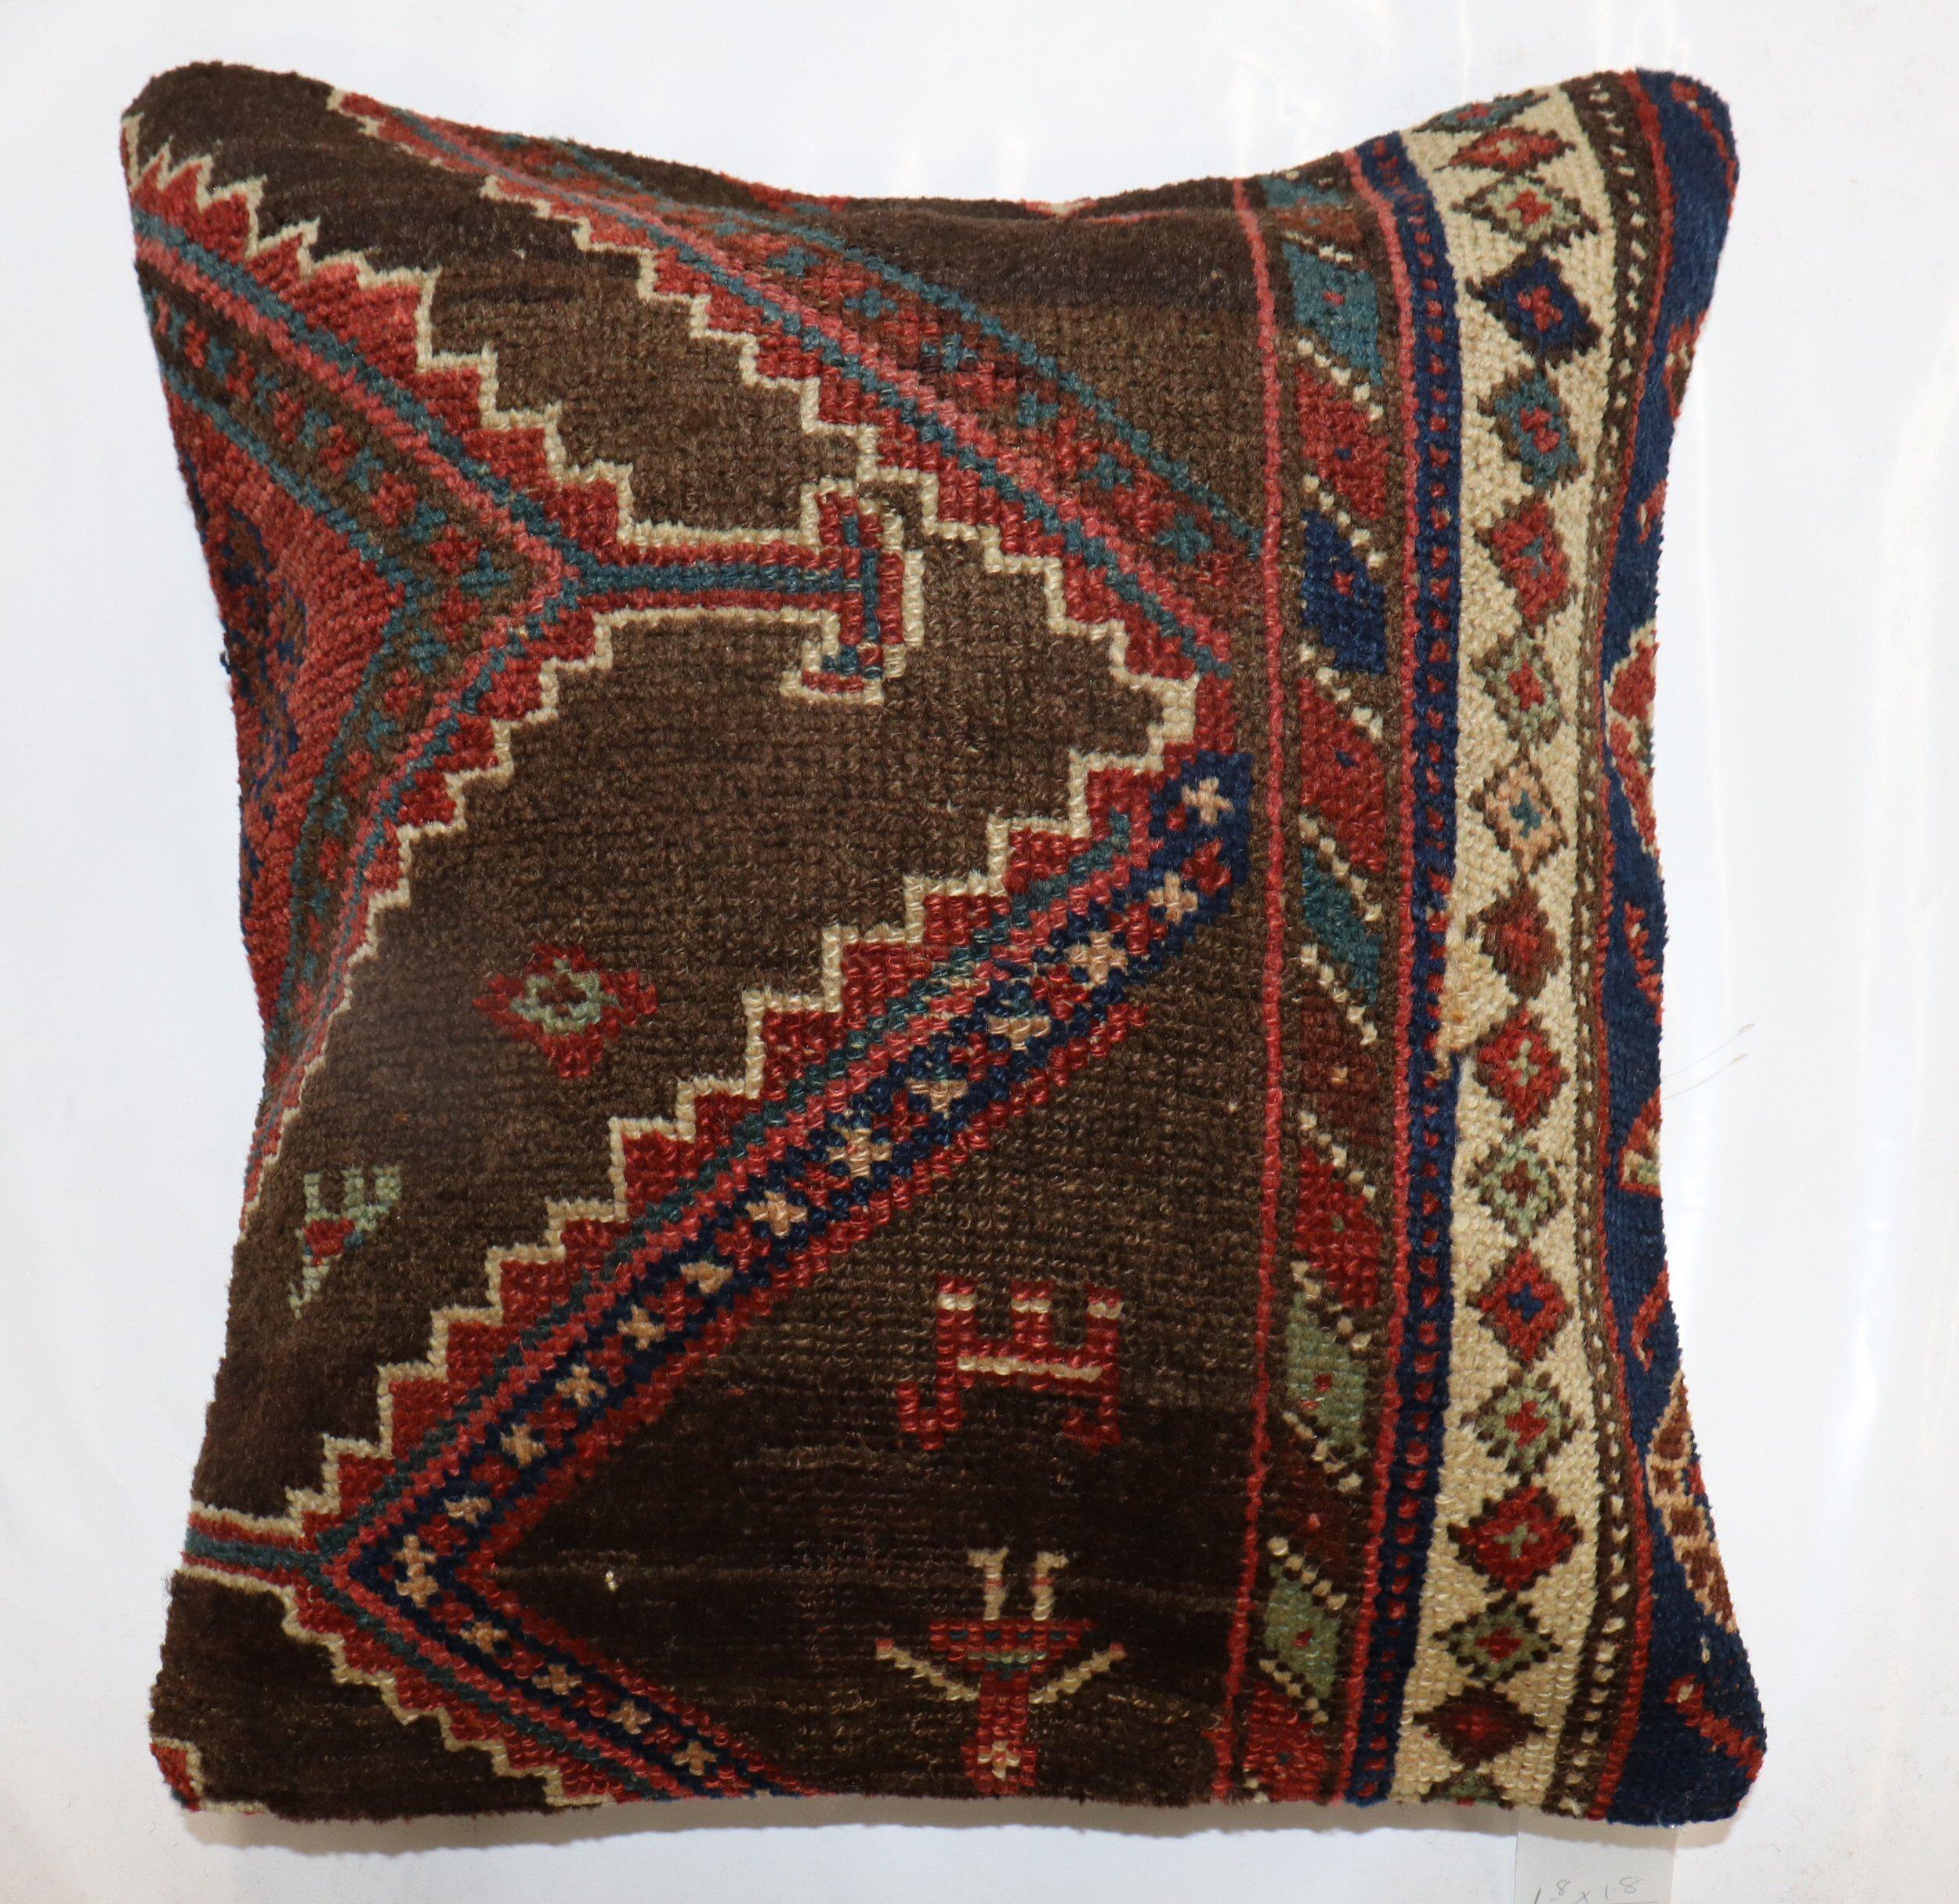 Kissen aus einem antiken persischen Kurdenteppich aus dem frühen 20. Jahrhundert. Mit Reißverschluss und Poly-Füllung.

Maße: 20'' x 20''